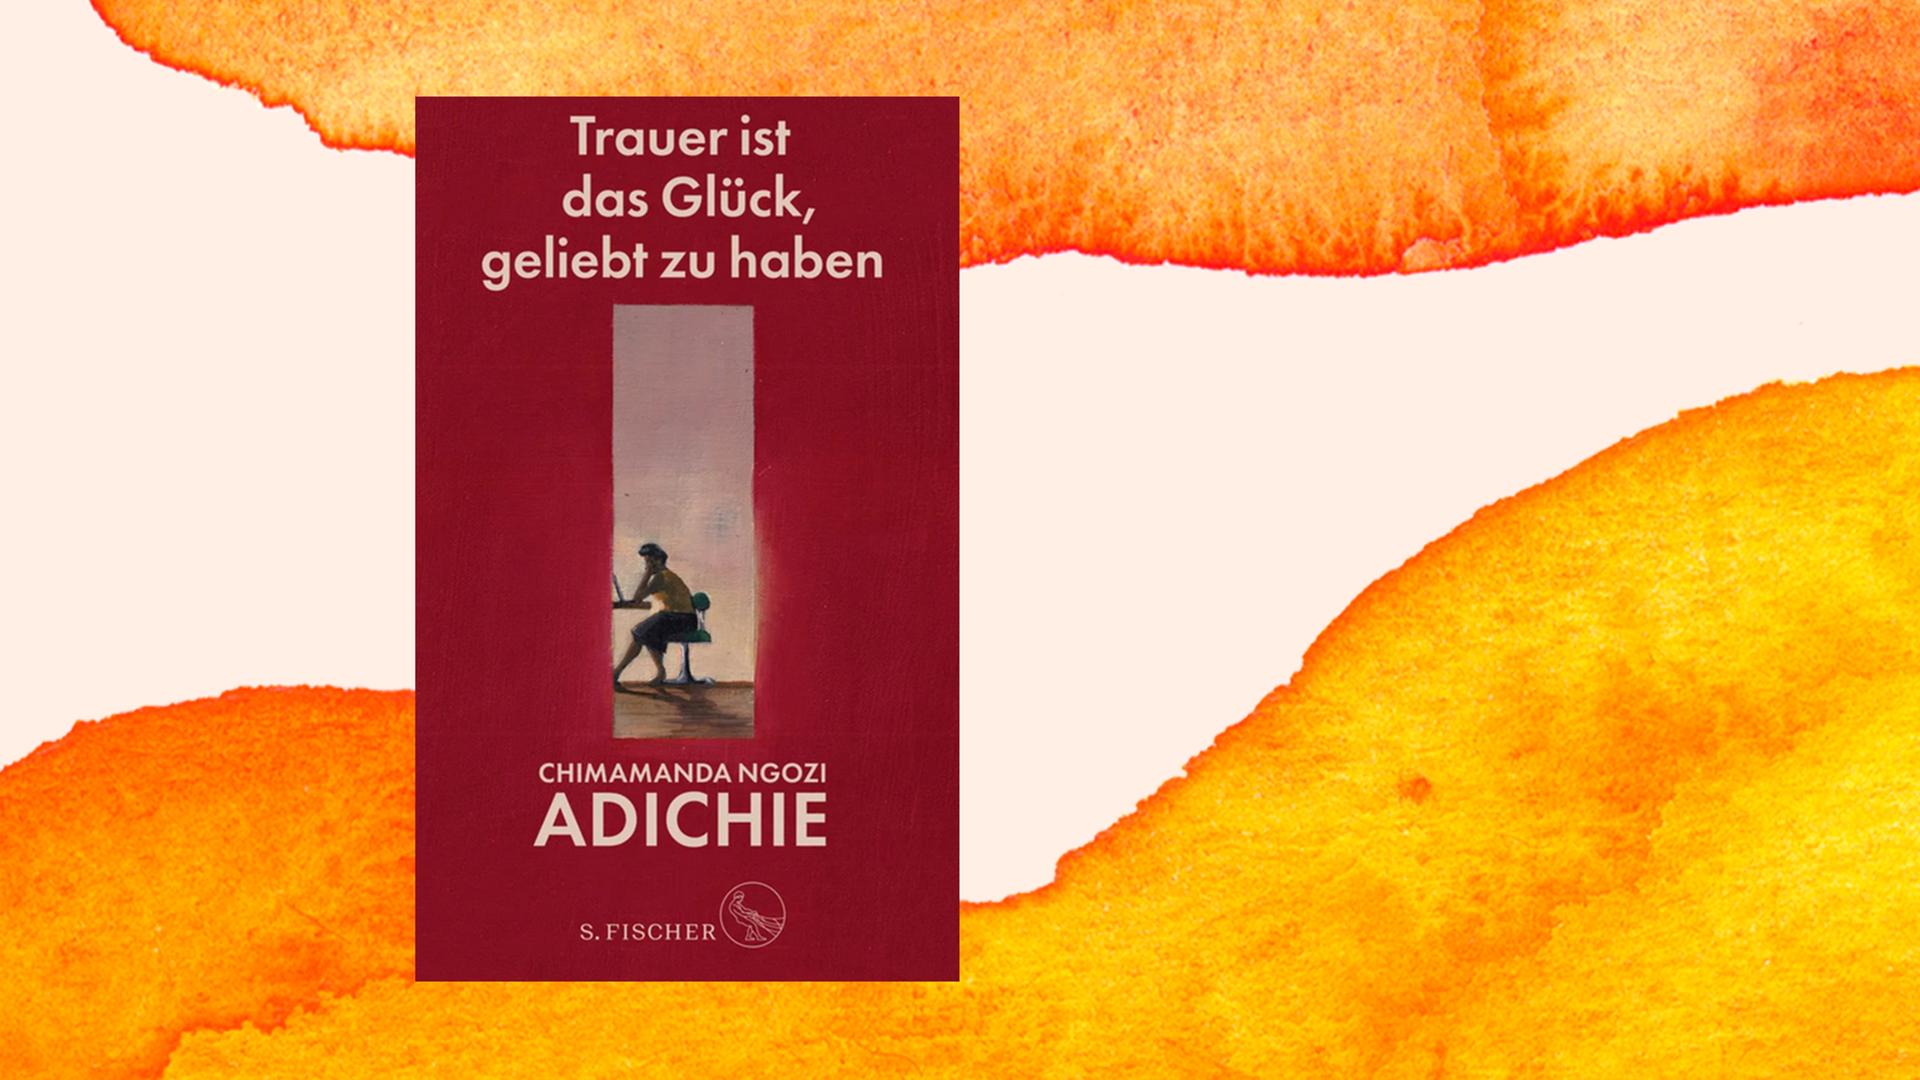 Buchcover von Chimamanda Ngozi Adichie: "Trauer ist das Glück, geliebt zu haben", S.Fischer Verlage, 2021.